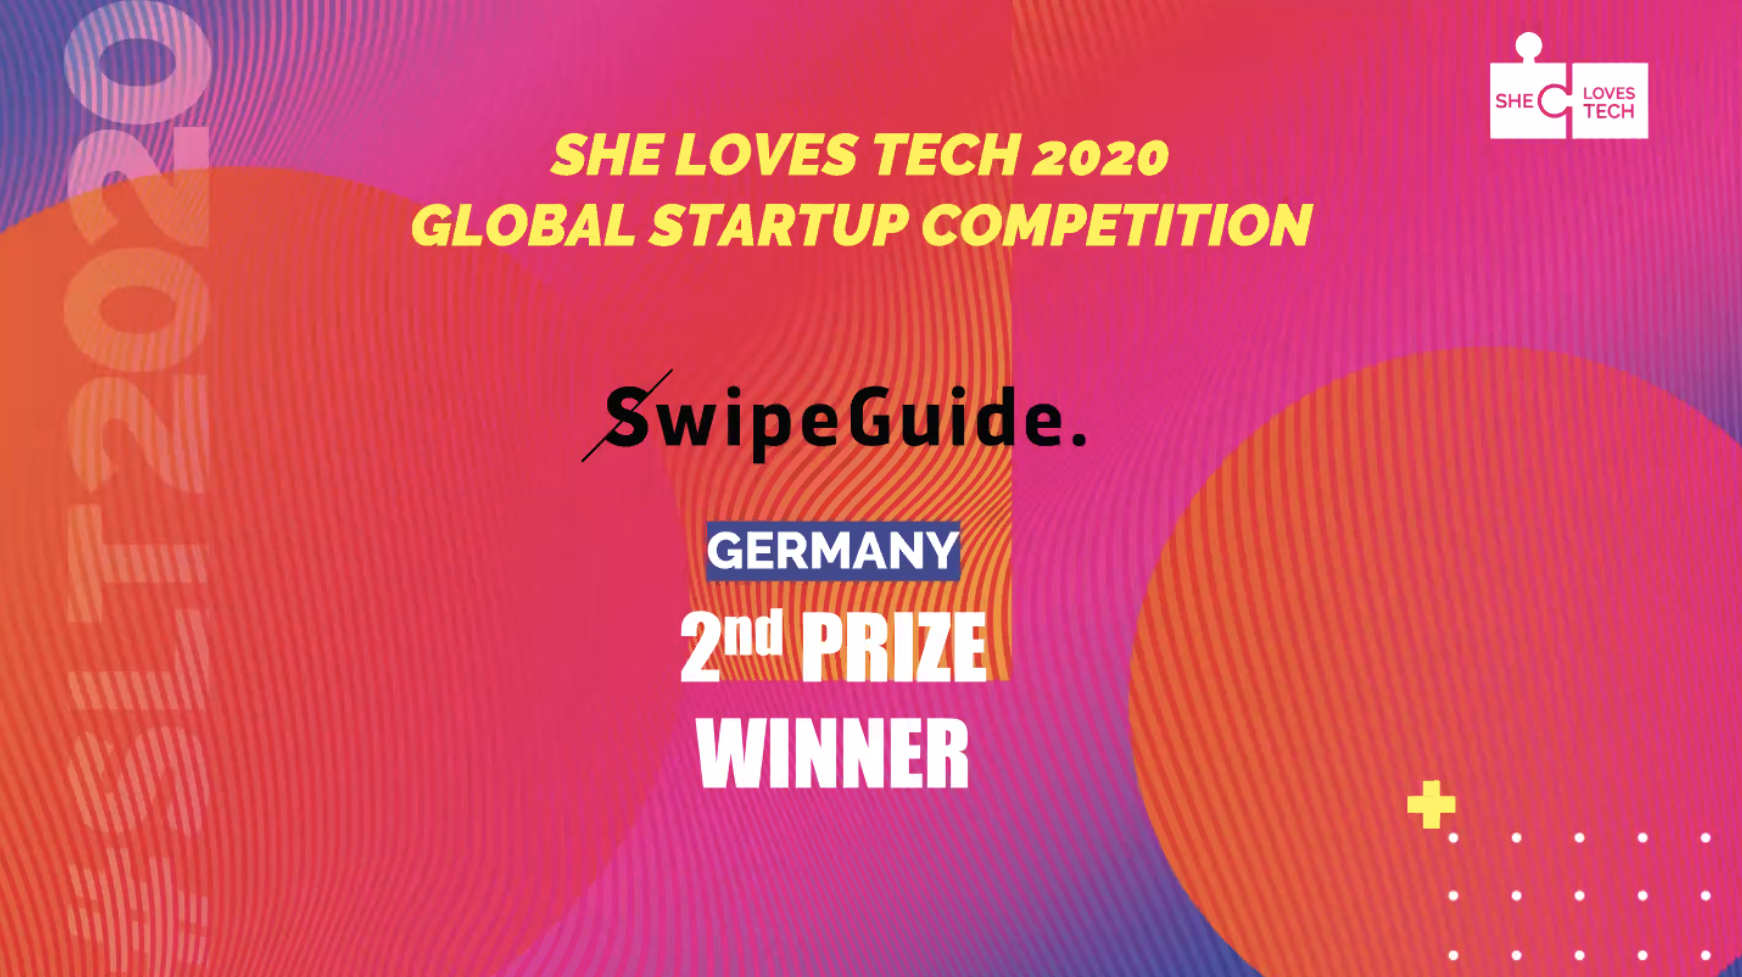 SwipeGuide wins 2nd prize in She Loves Tech 2020